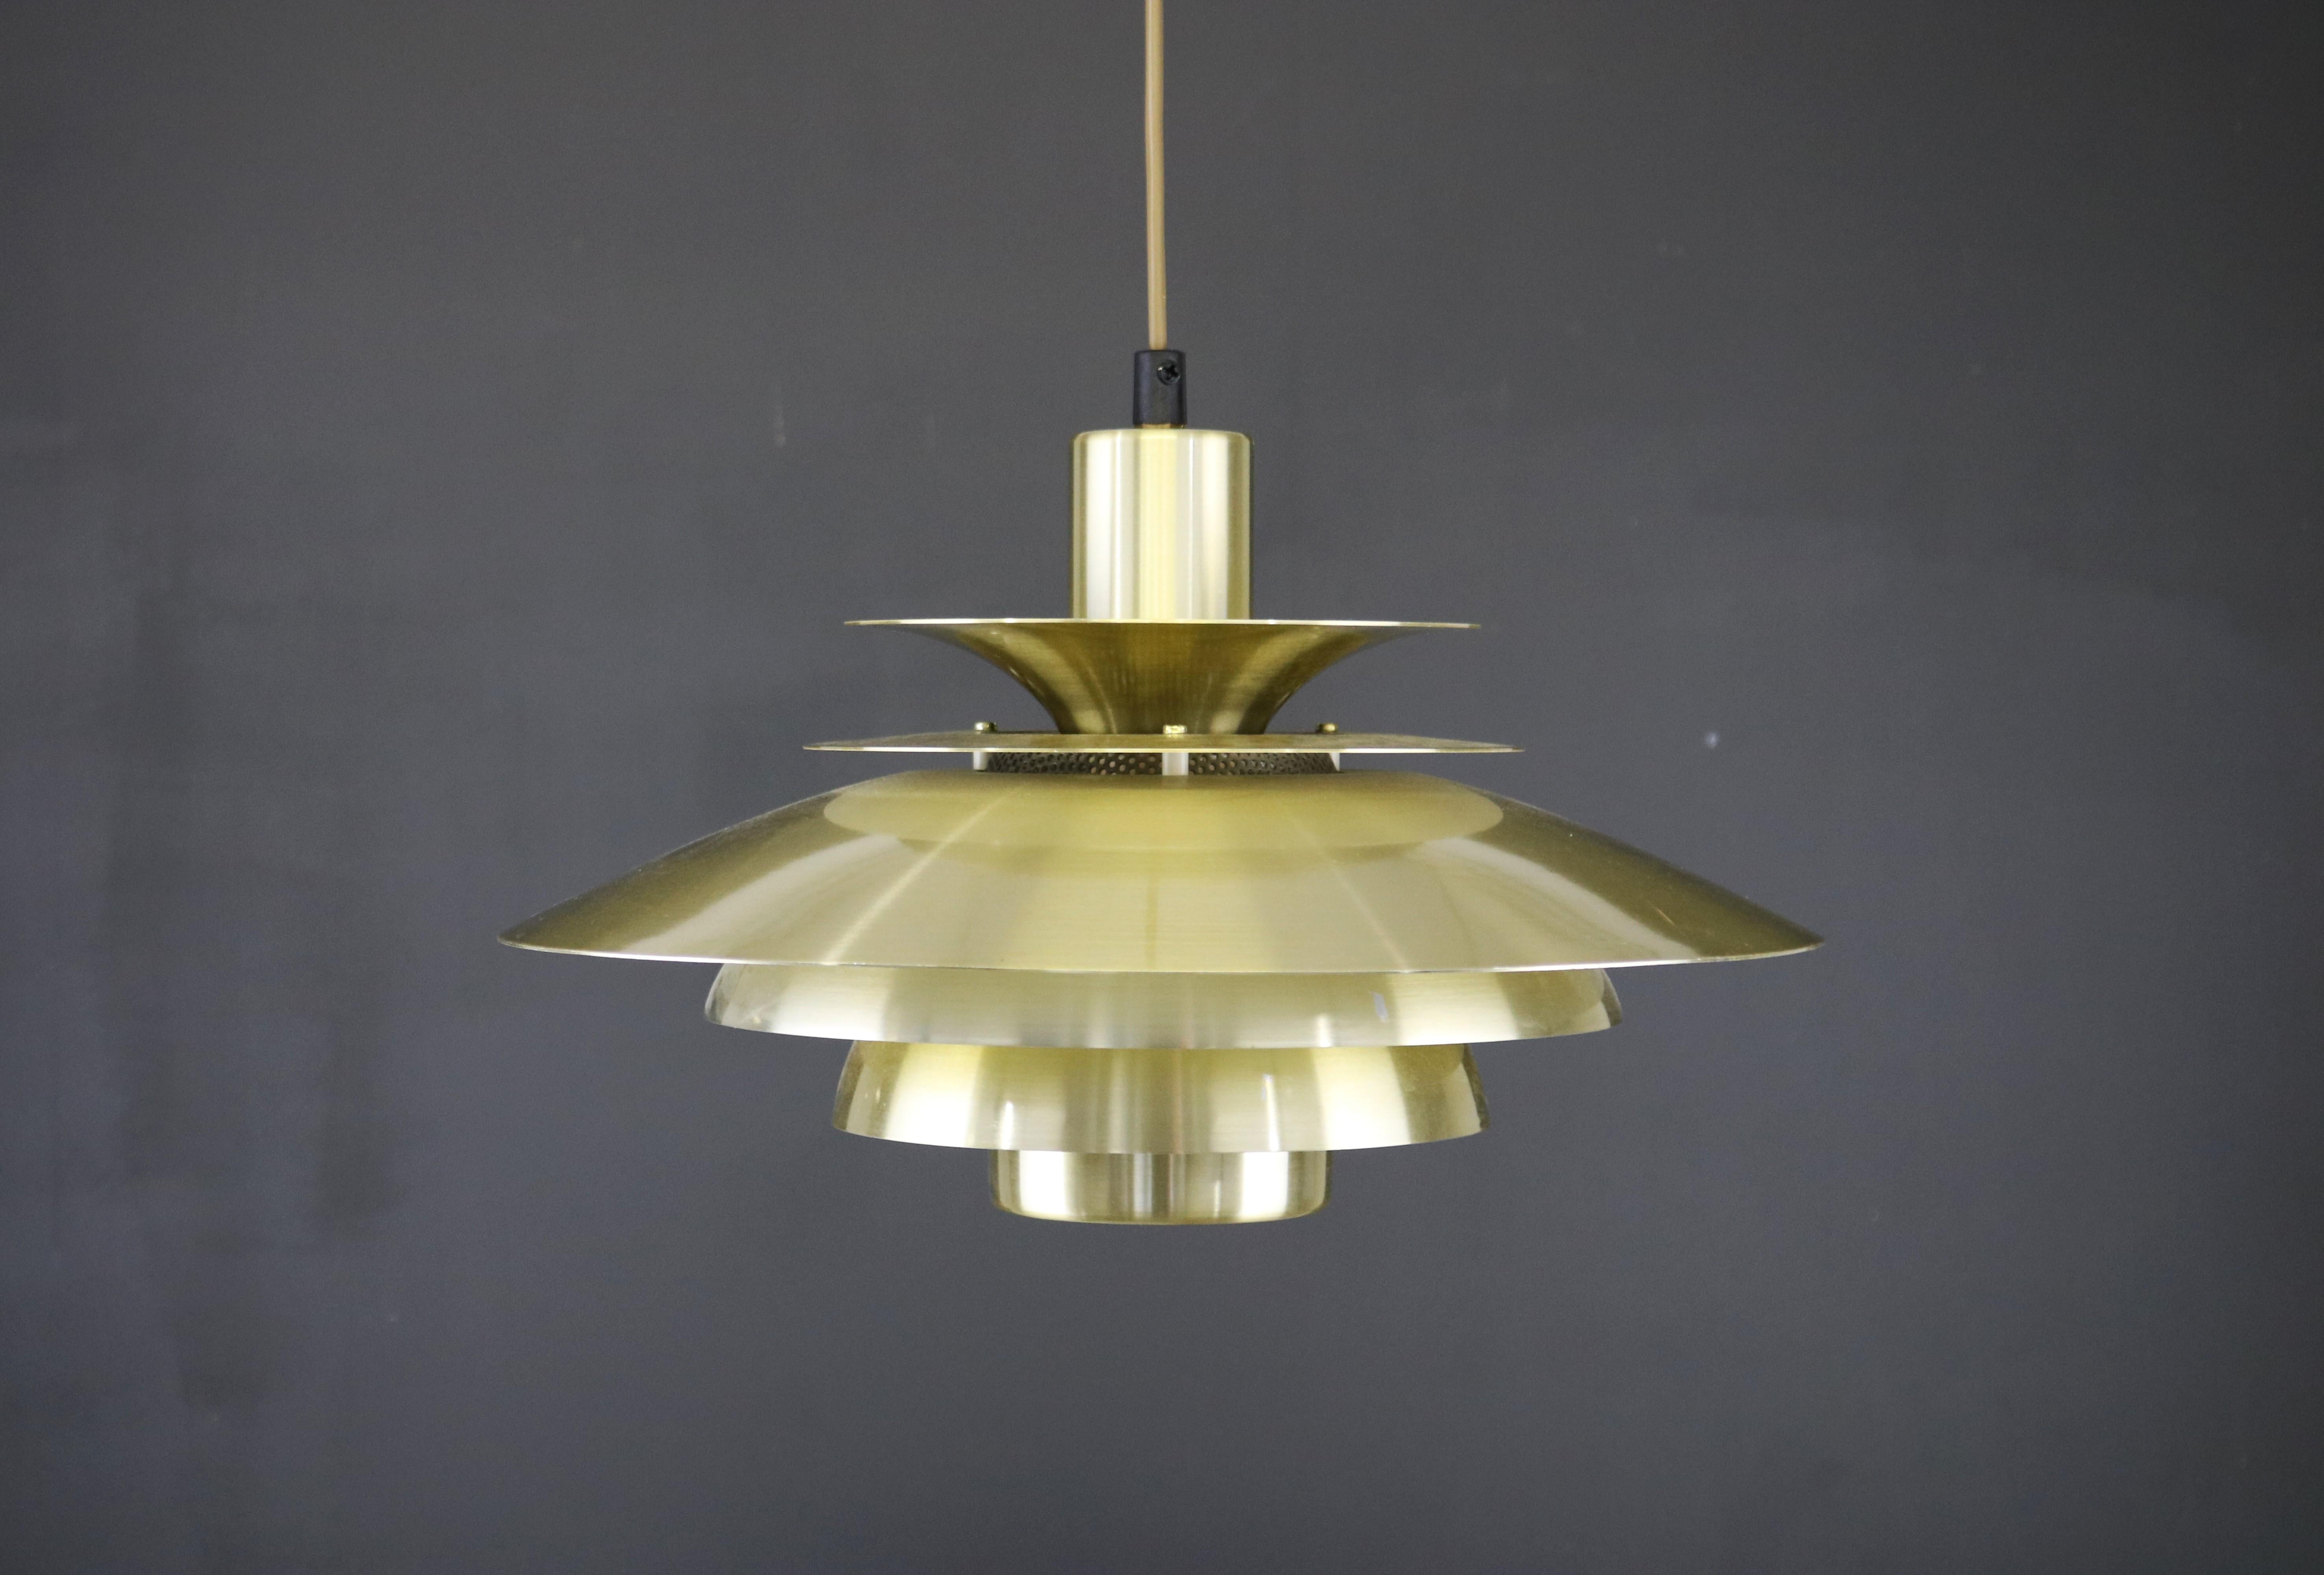 JEKA Lampe suspendue danoise dans une chaude couleur dorée. Ce modèle, 